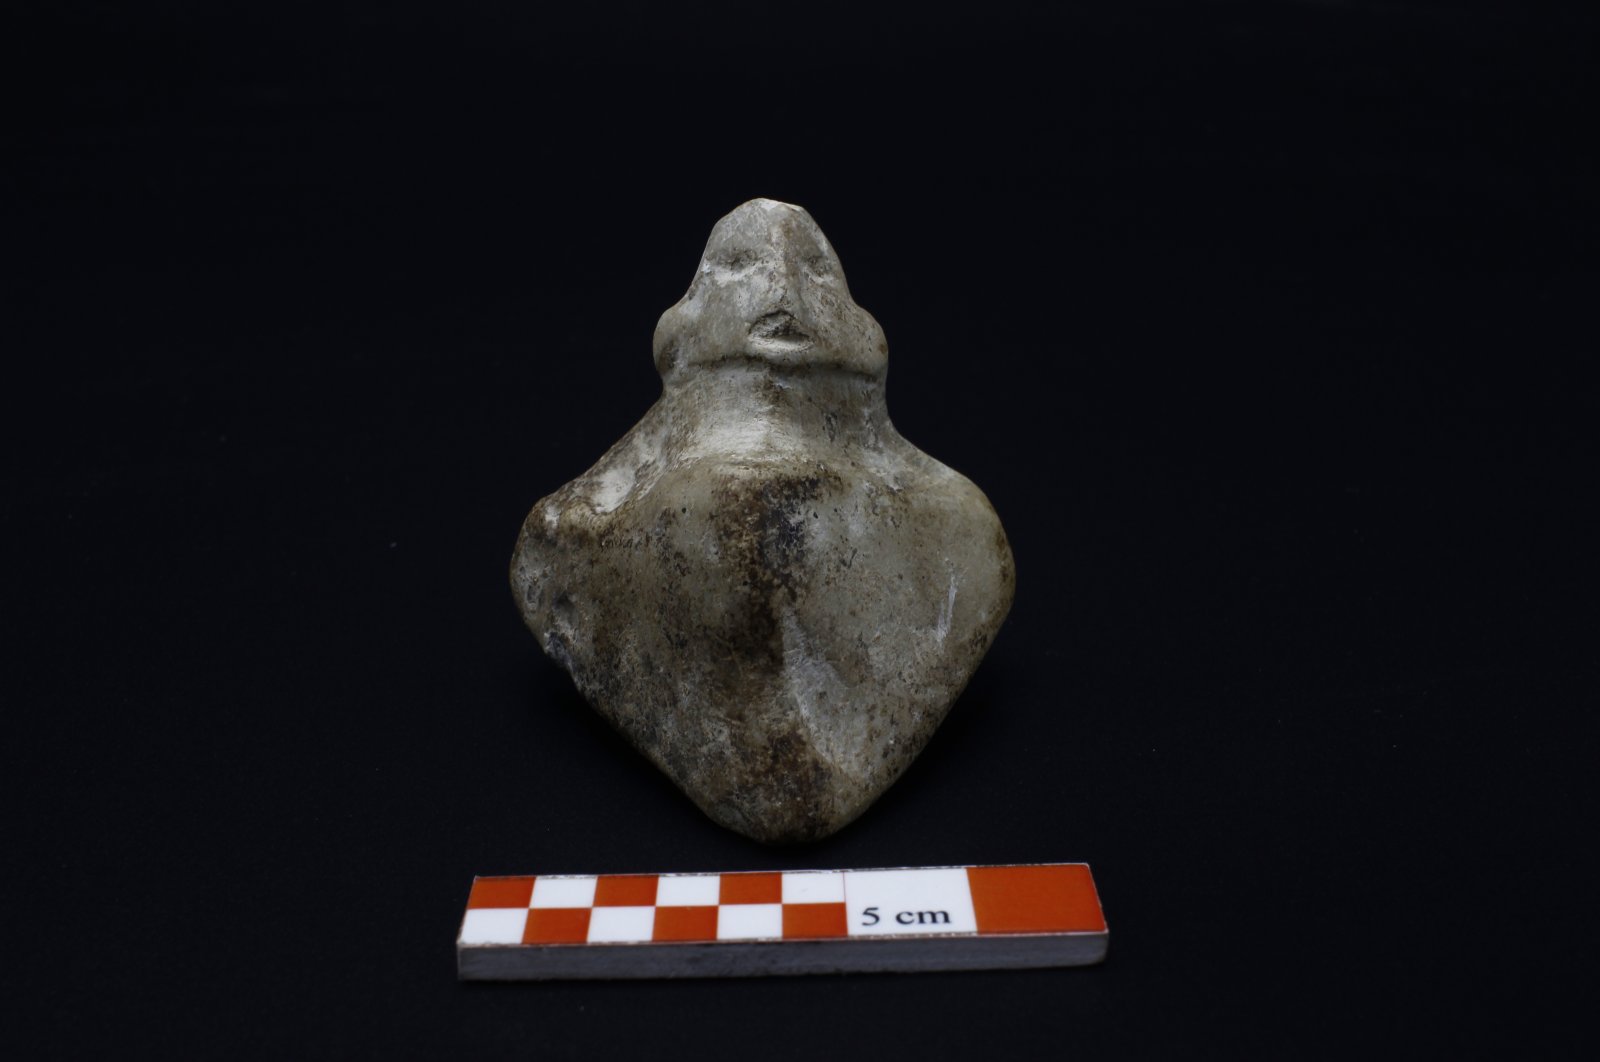 Penggalian mengungkapkan patung marmer berusia 8.500 tahun di atalhöyük